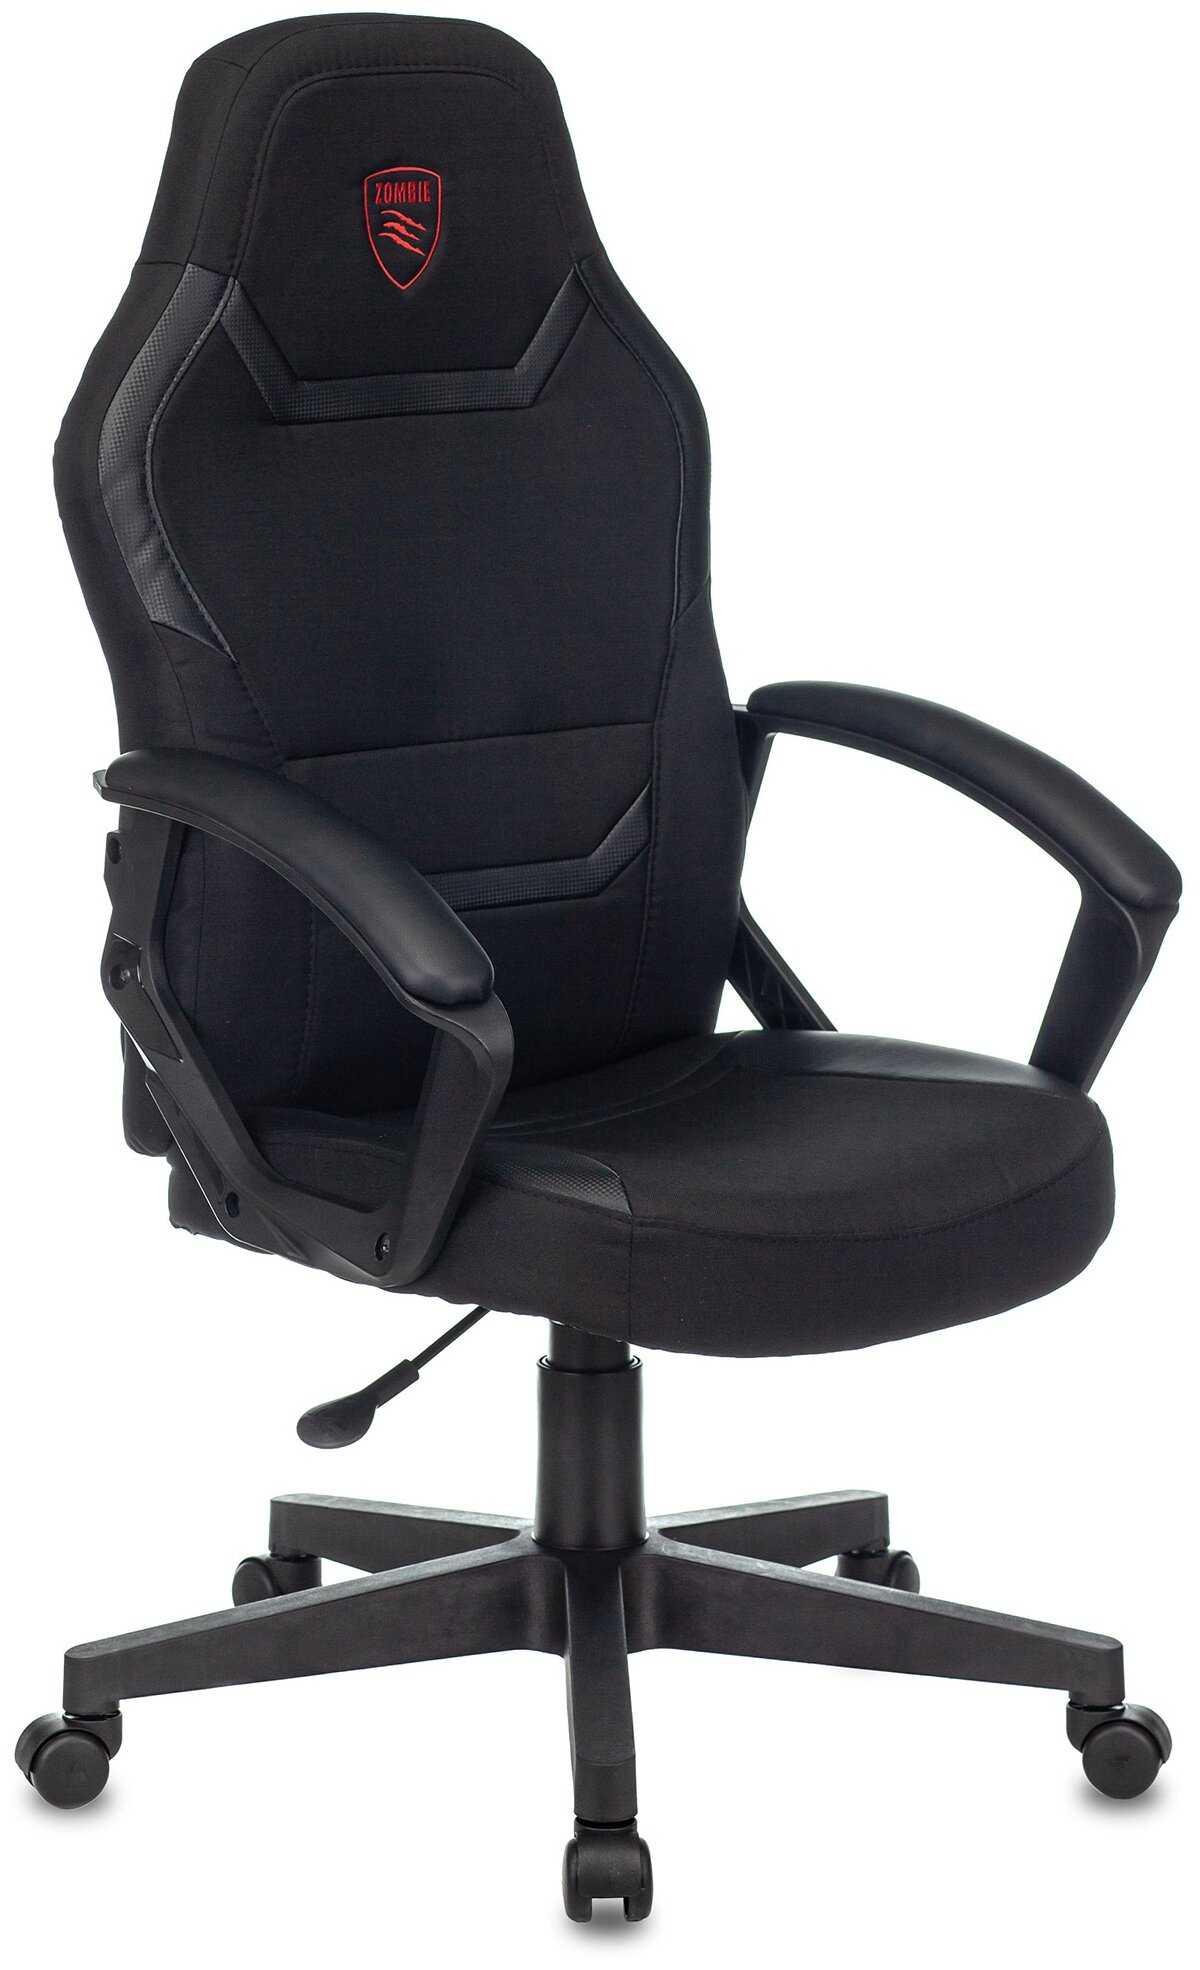 Кресло игровое Zombie 10 черный текстильное, экокожа, комьютерное геймерсоке кресло